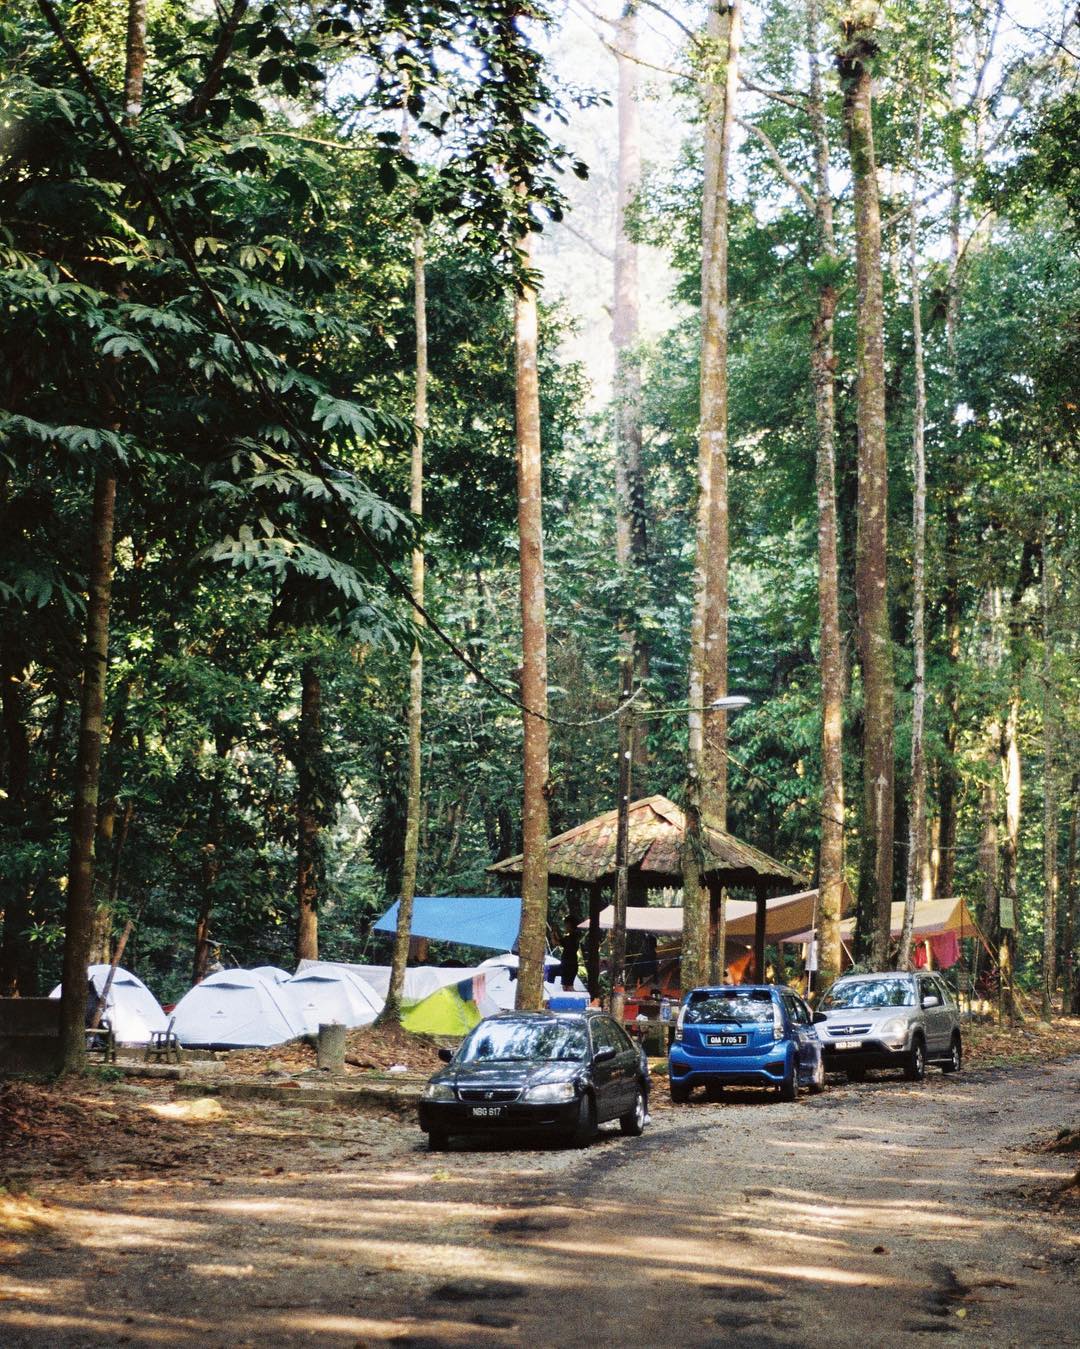 Camping selangor